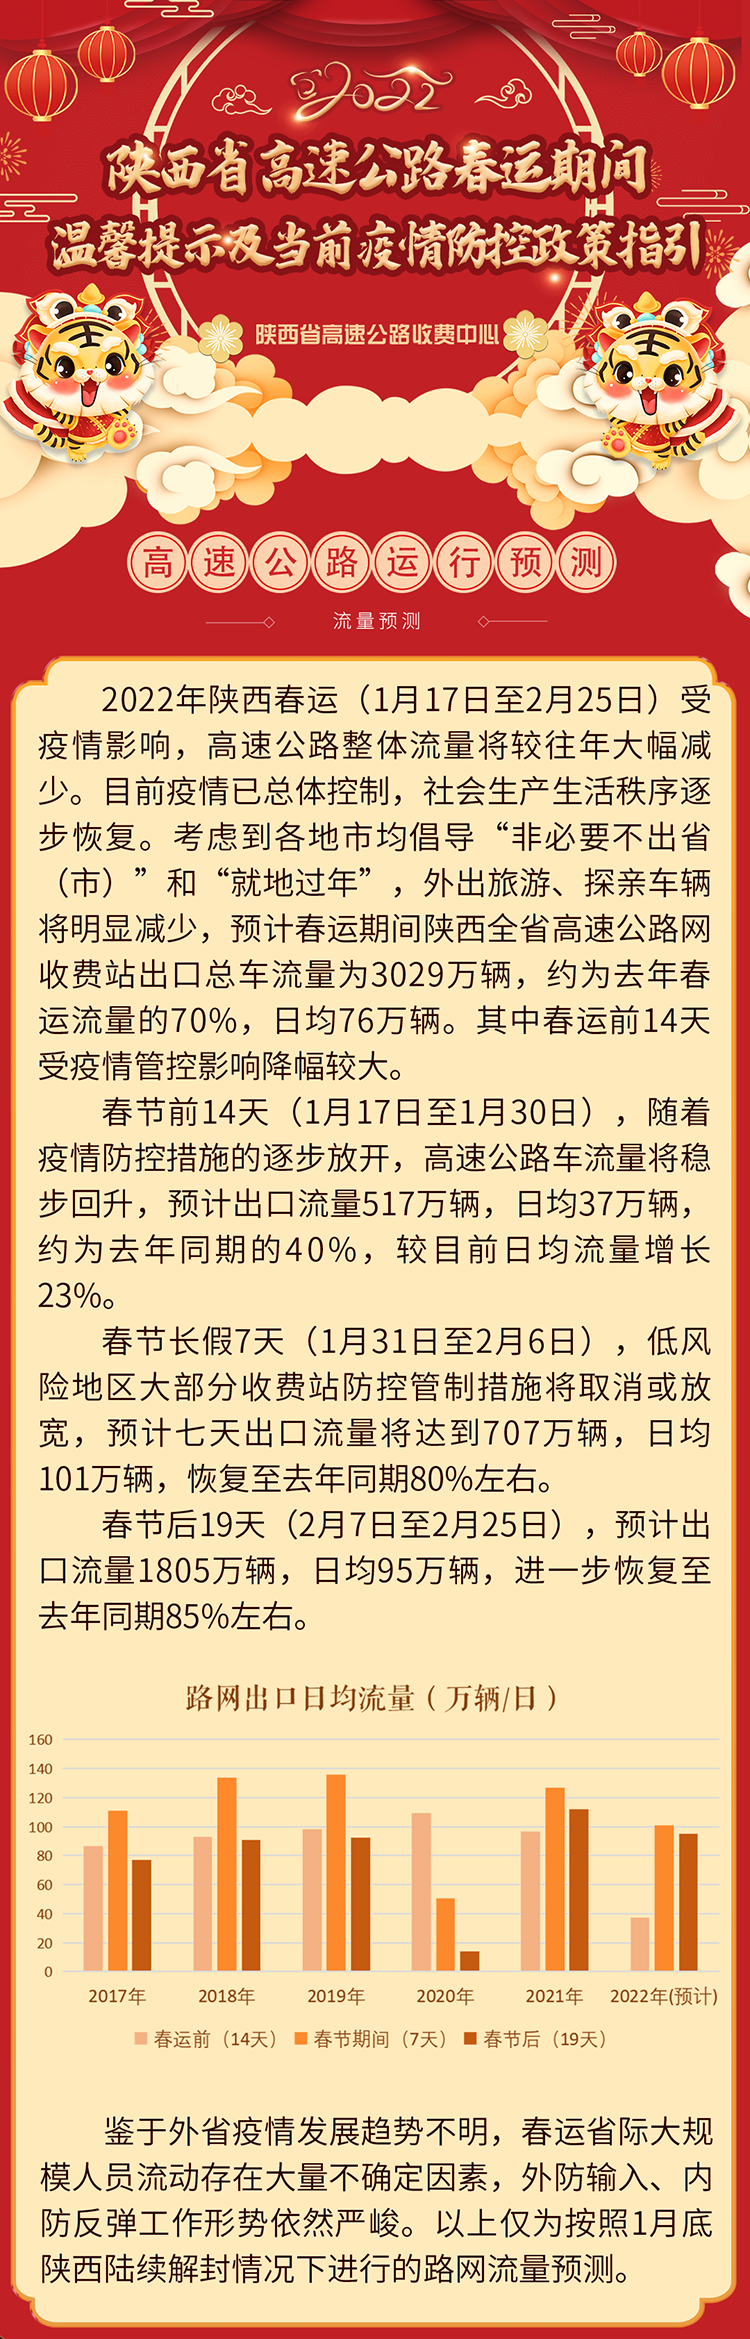 陕西省高速公路春运期间温馨提示及当前疫情防控政策指引